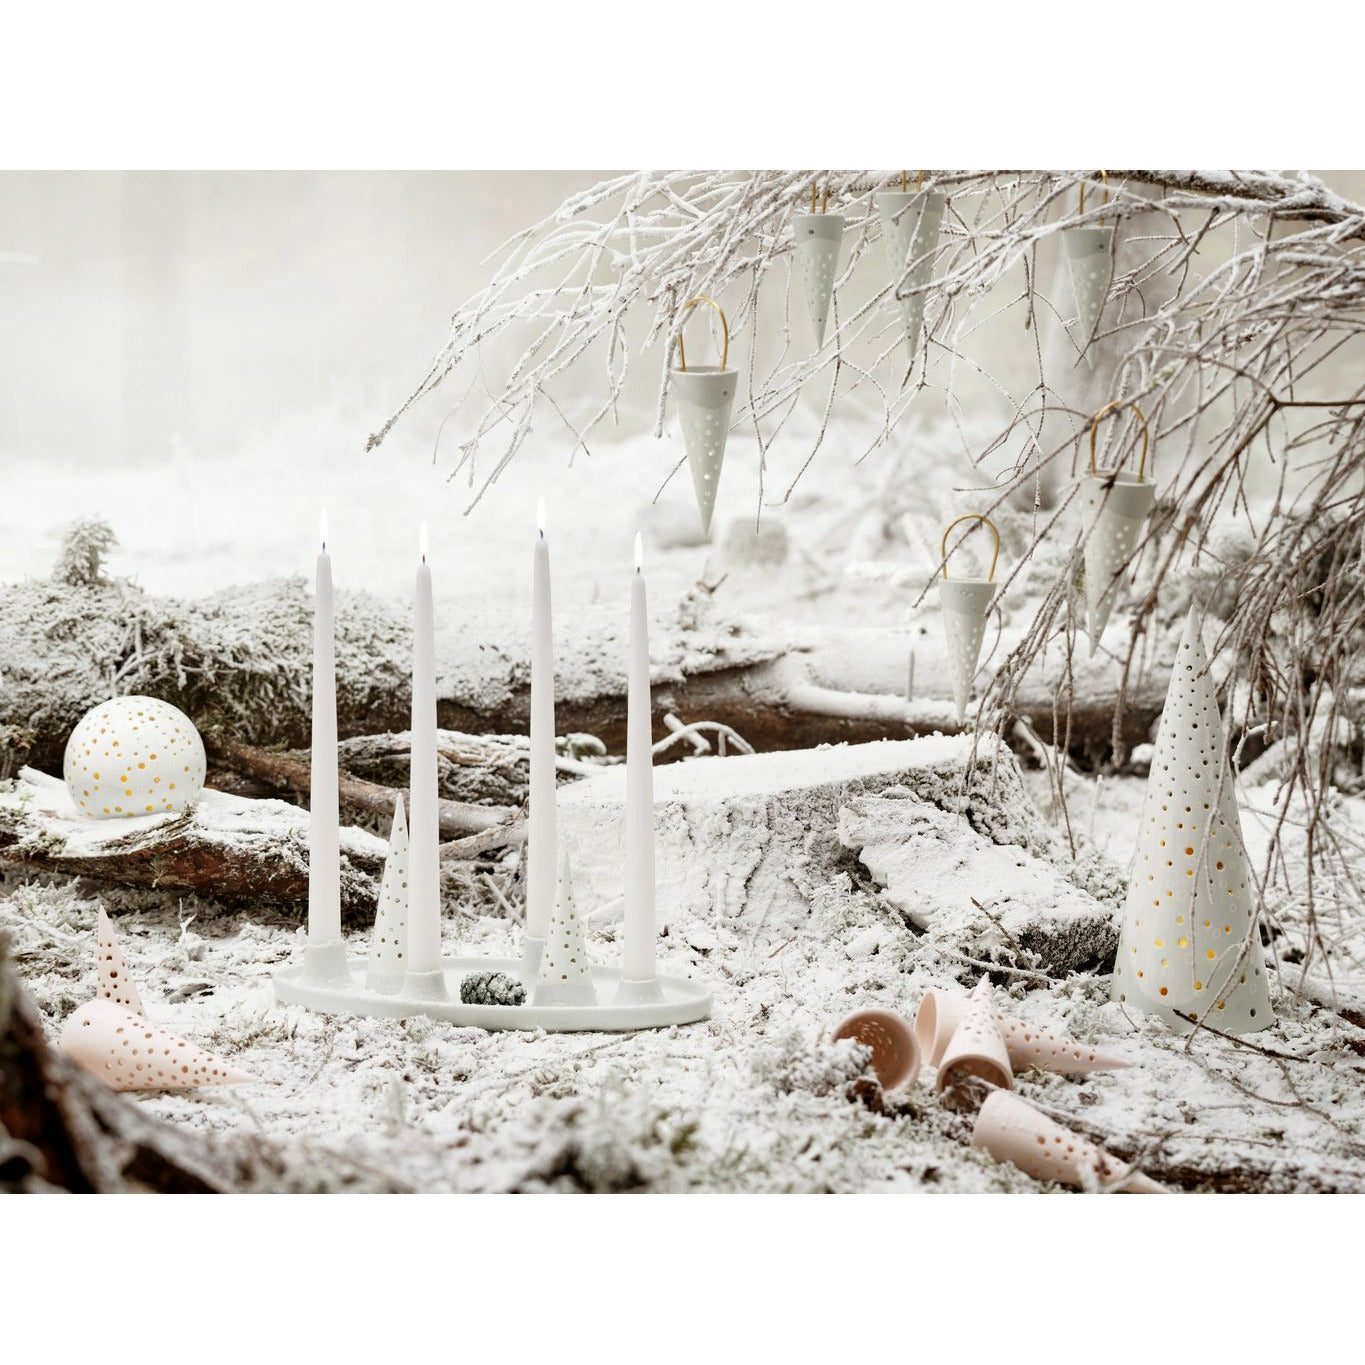 Kähler Nobili Christmas Timmer 4.5x15.5 Cm, Snow White